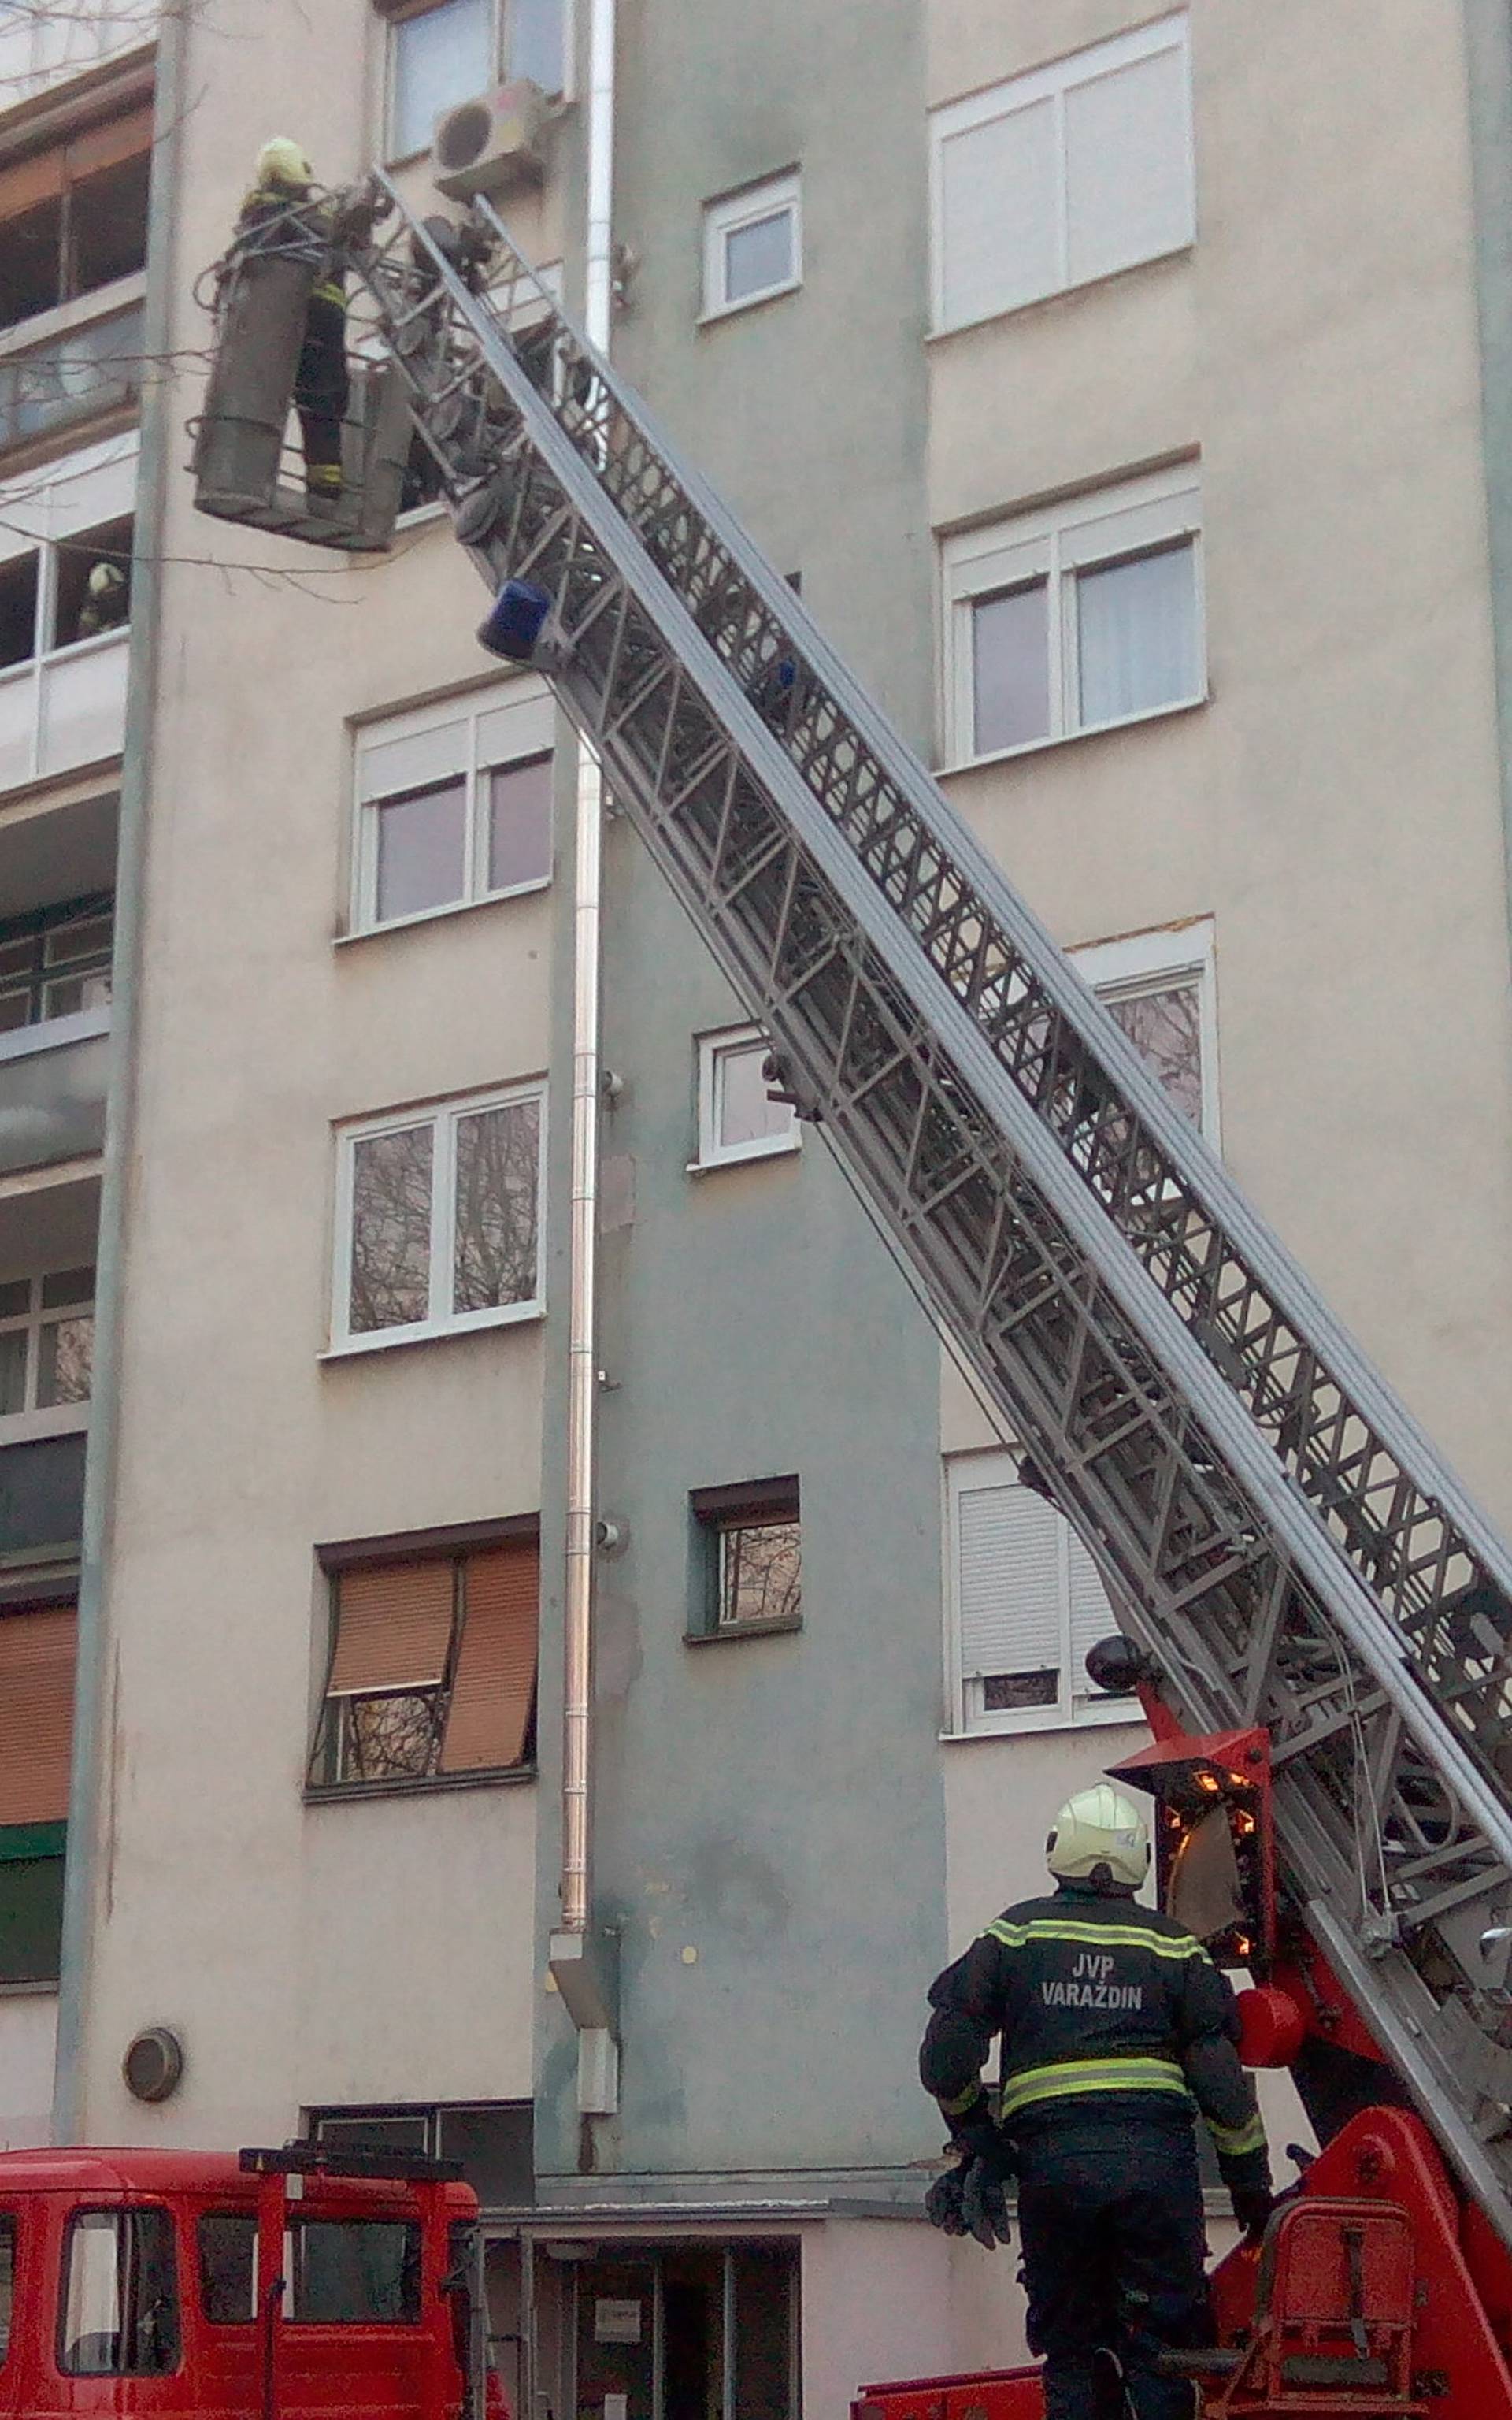 U Varaždinu gorio stan, susjedi su van izvukli 9-godišnjakinju